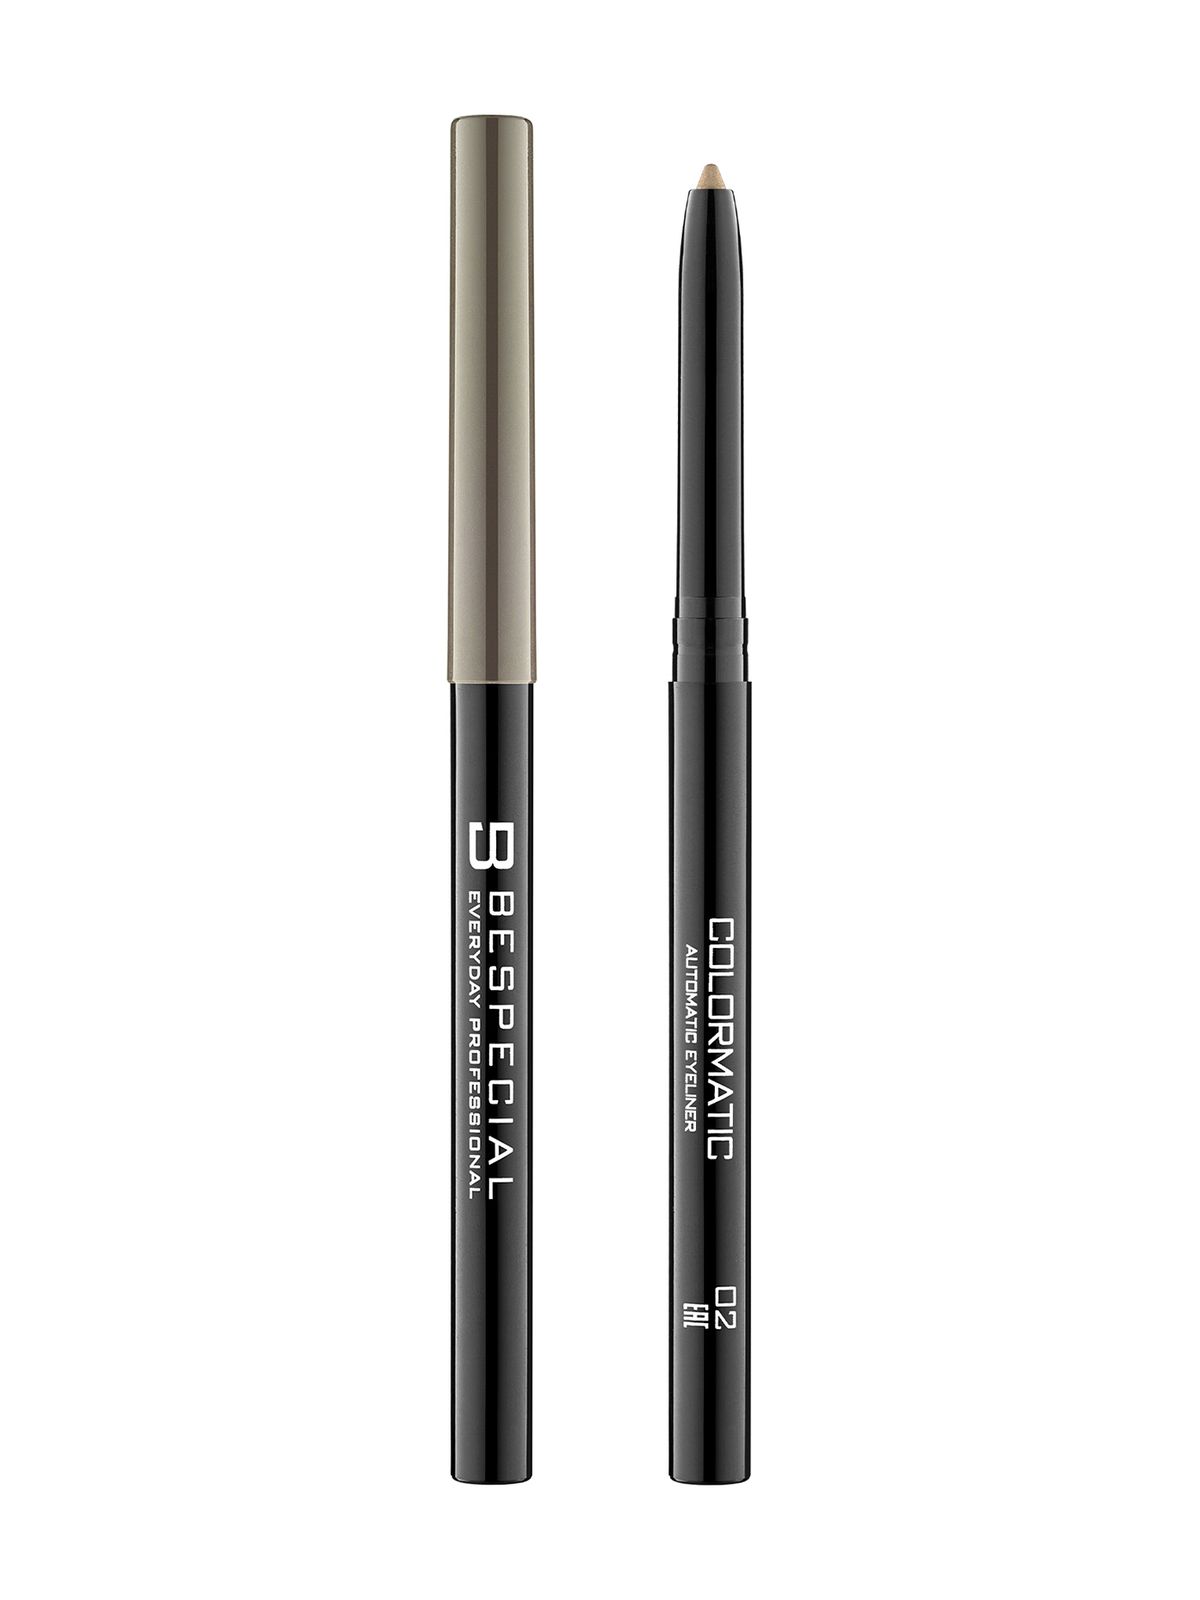 Механический карандаш для глаз Bespecial Colormatic Eye Pencil карандаш для глаз lancome drama liqui pencil 24h гелевый 01 cafe noir 1 2 г